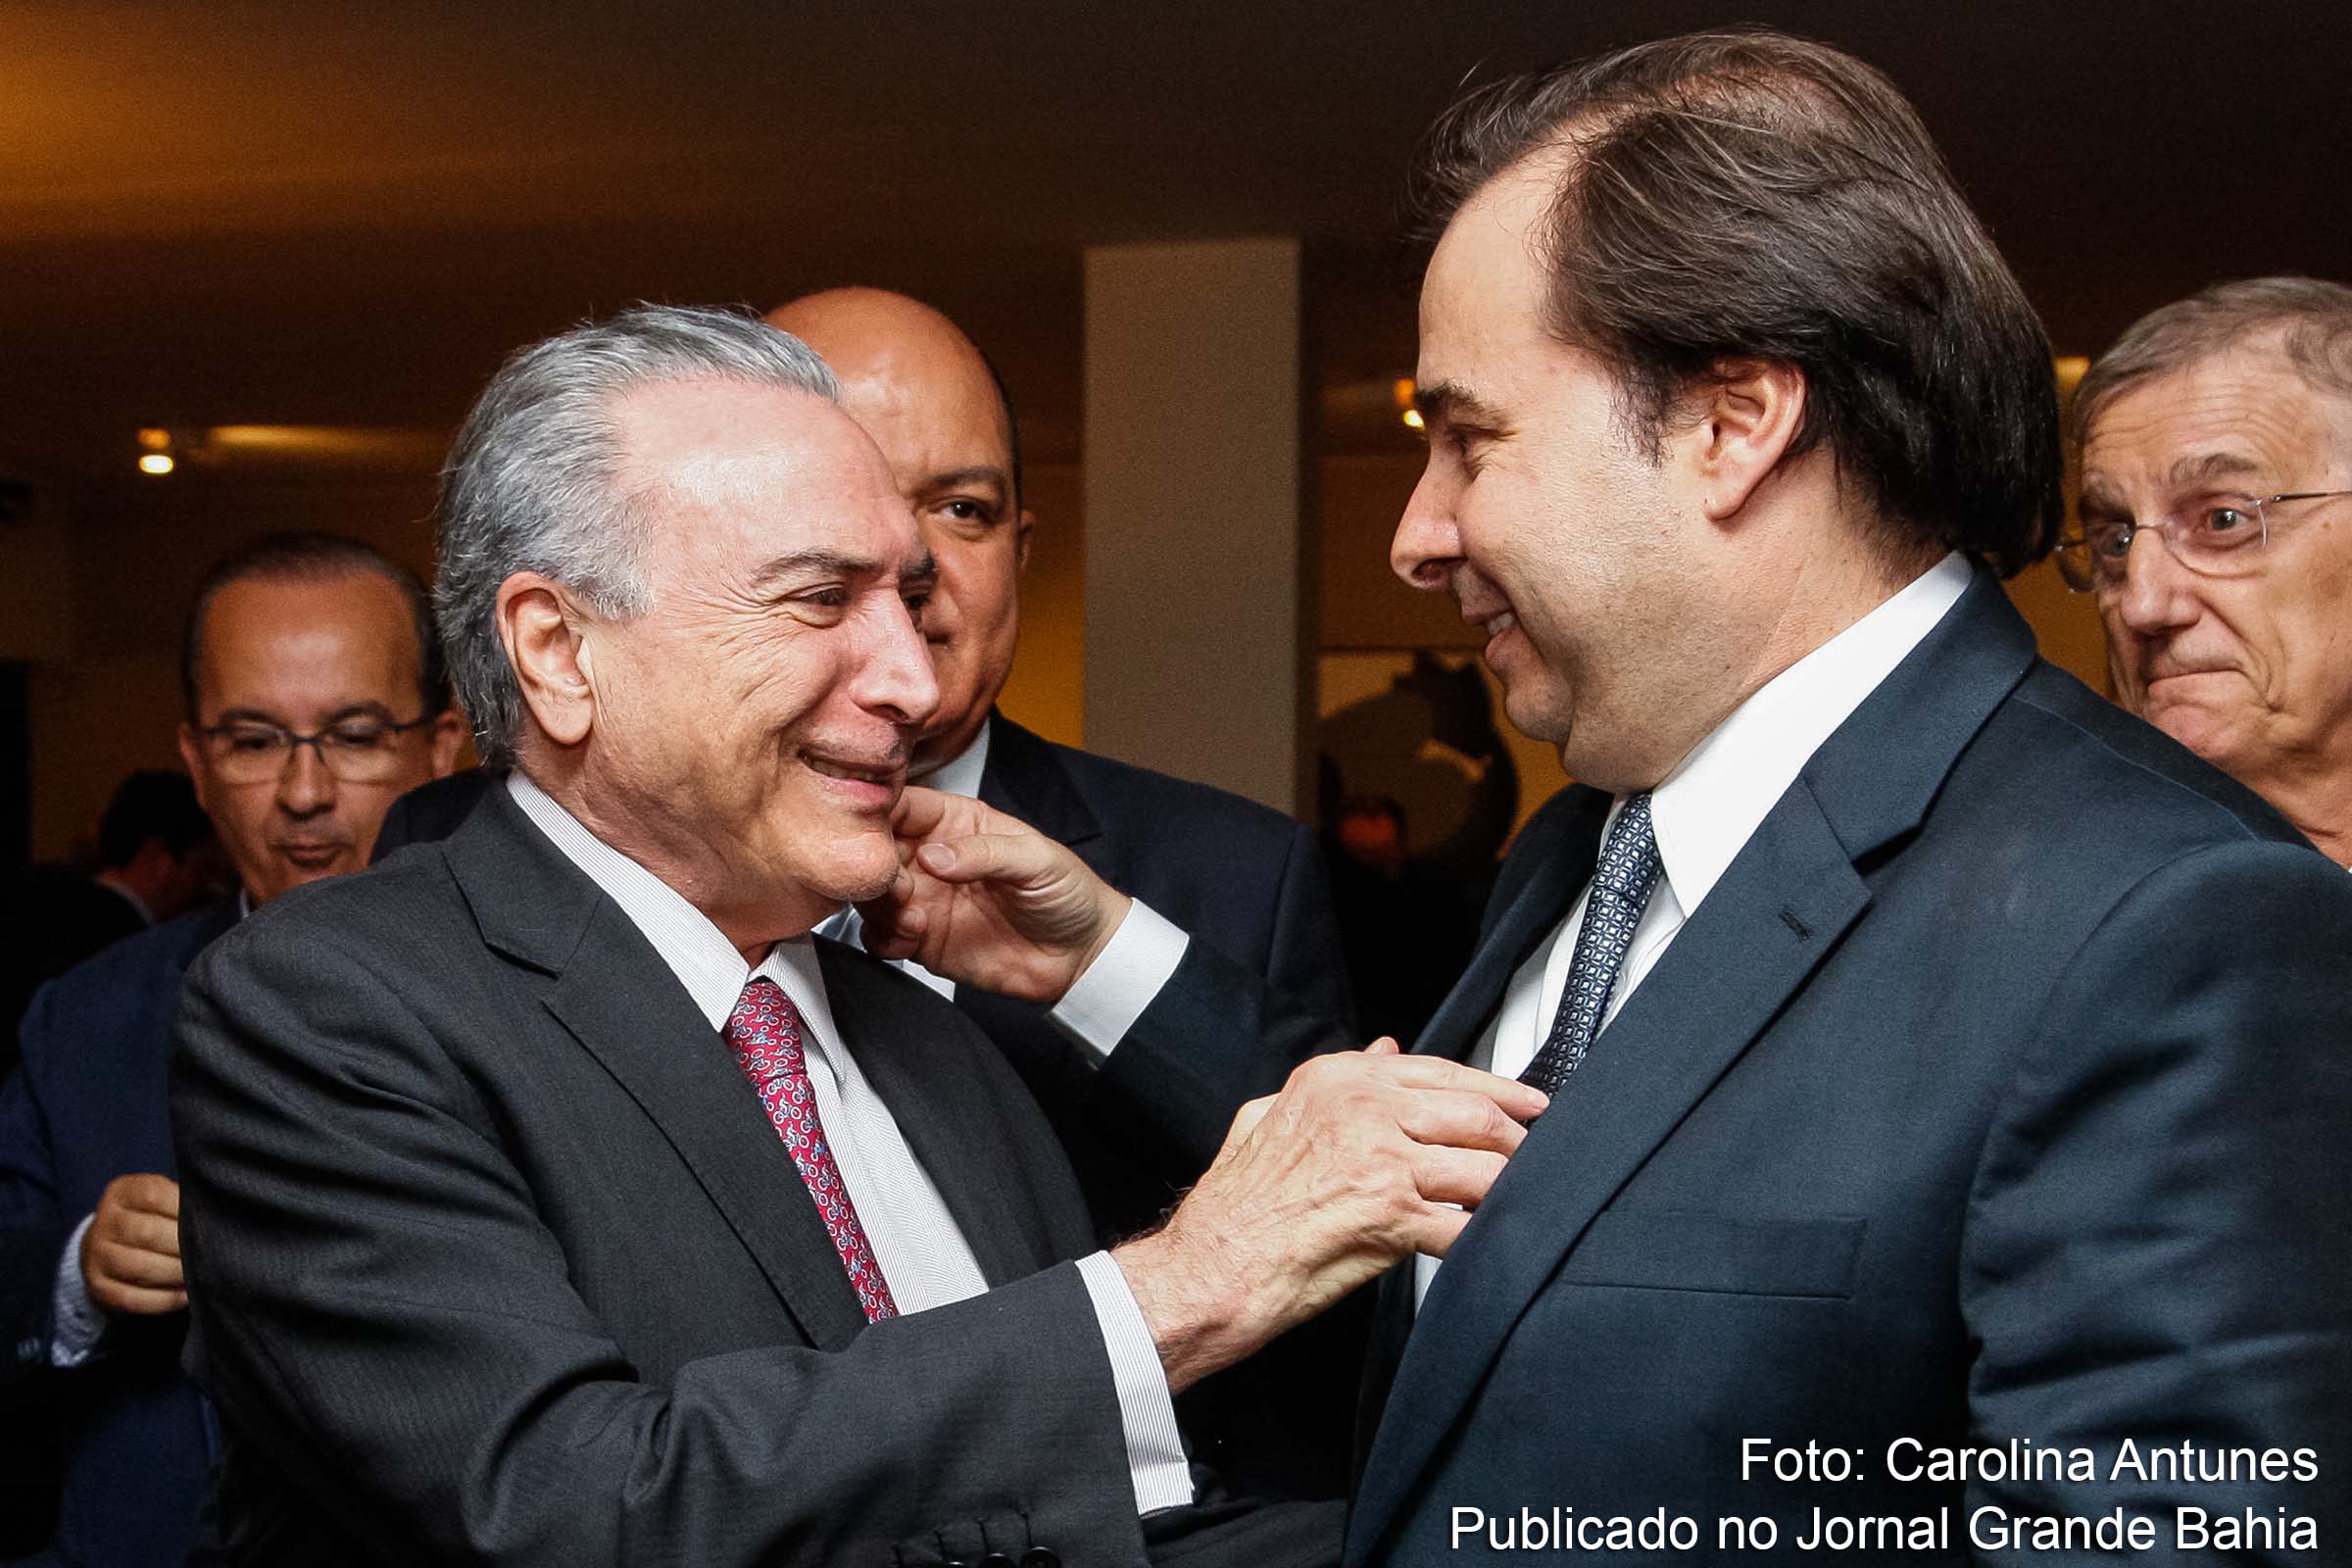 Michel Temer, presidente da República e Rodrigo Maia, presidente da Câmara dos Deputados, em comum, a busca de atalho para o poder da República.